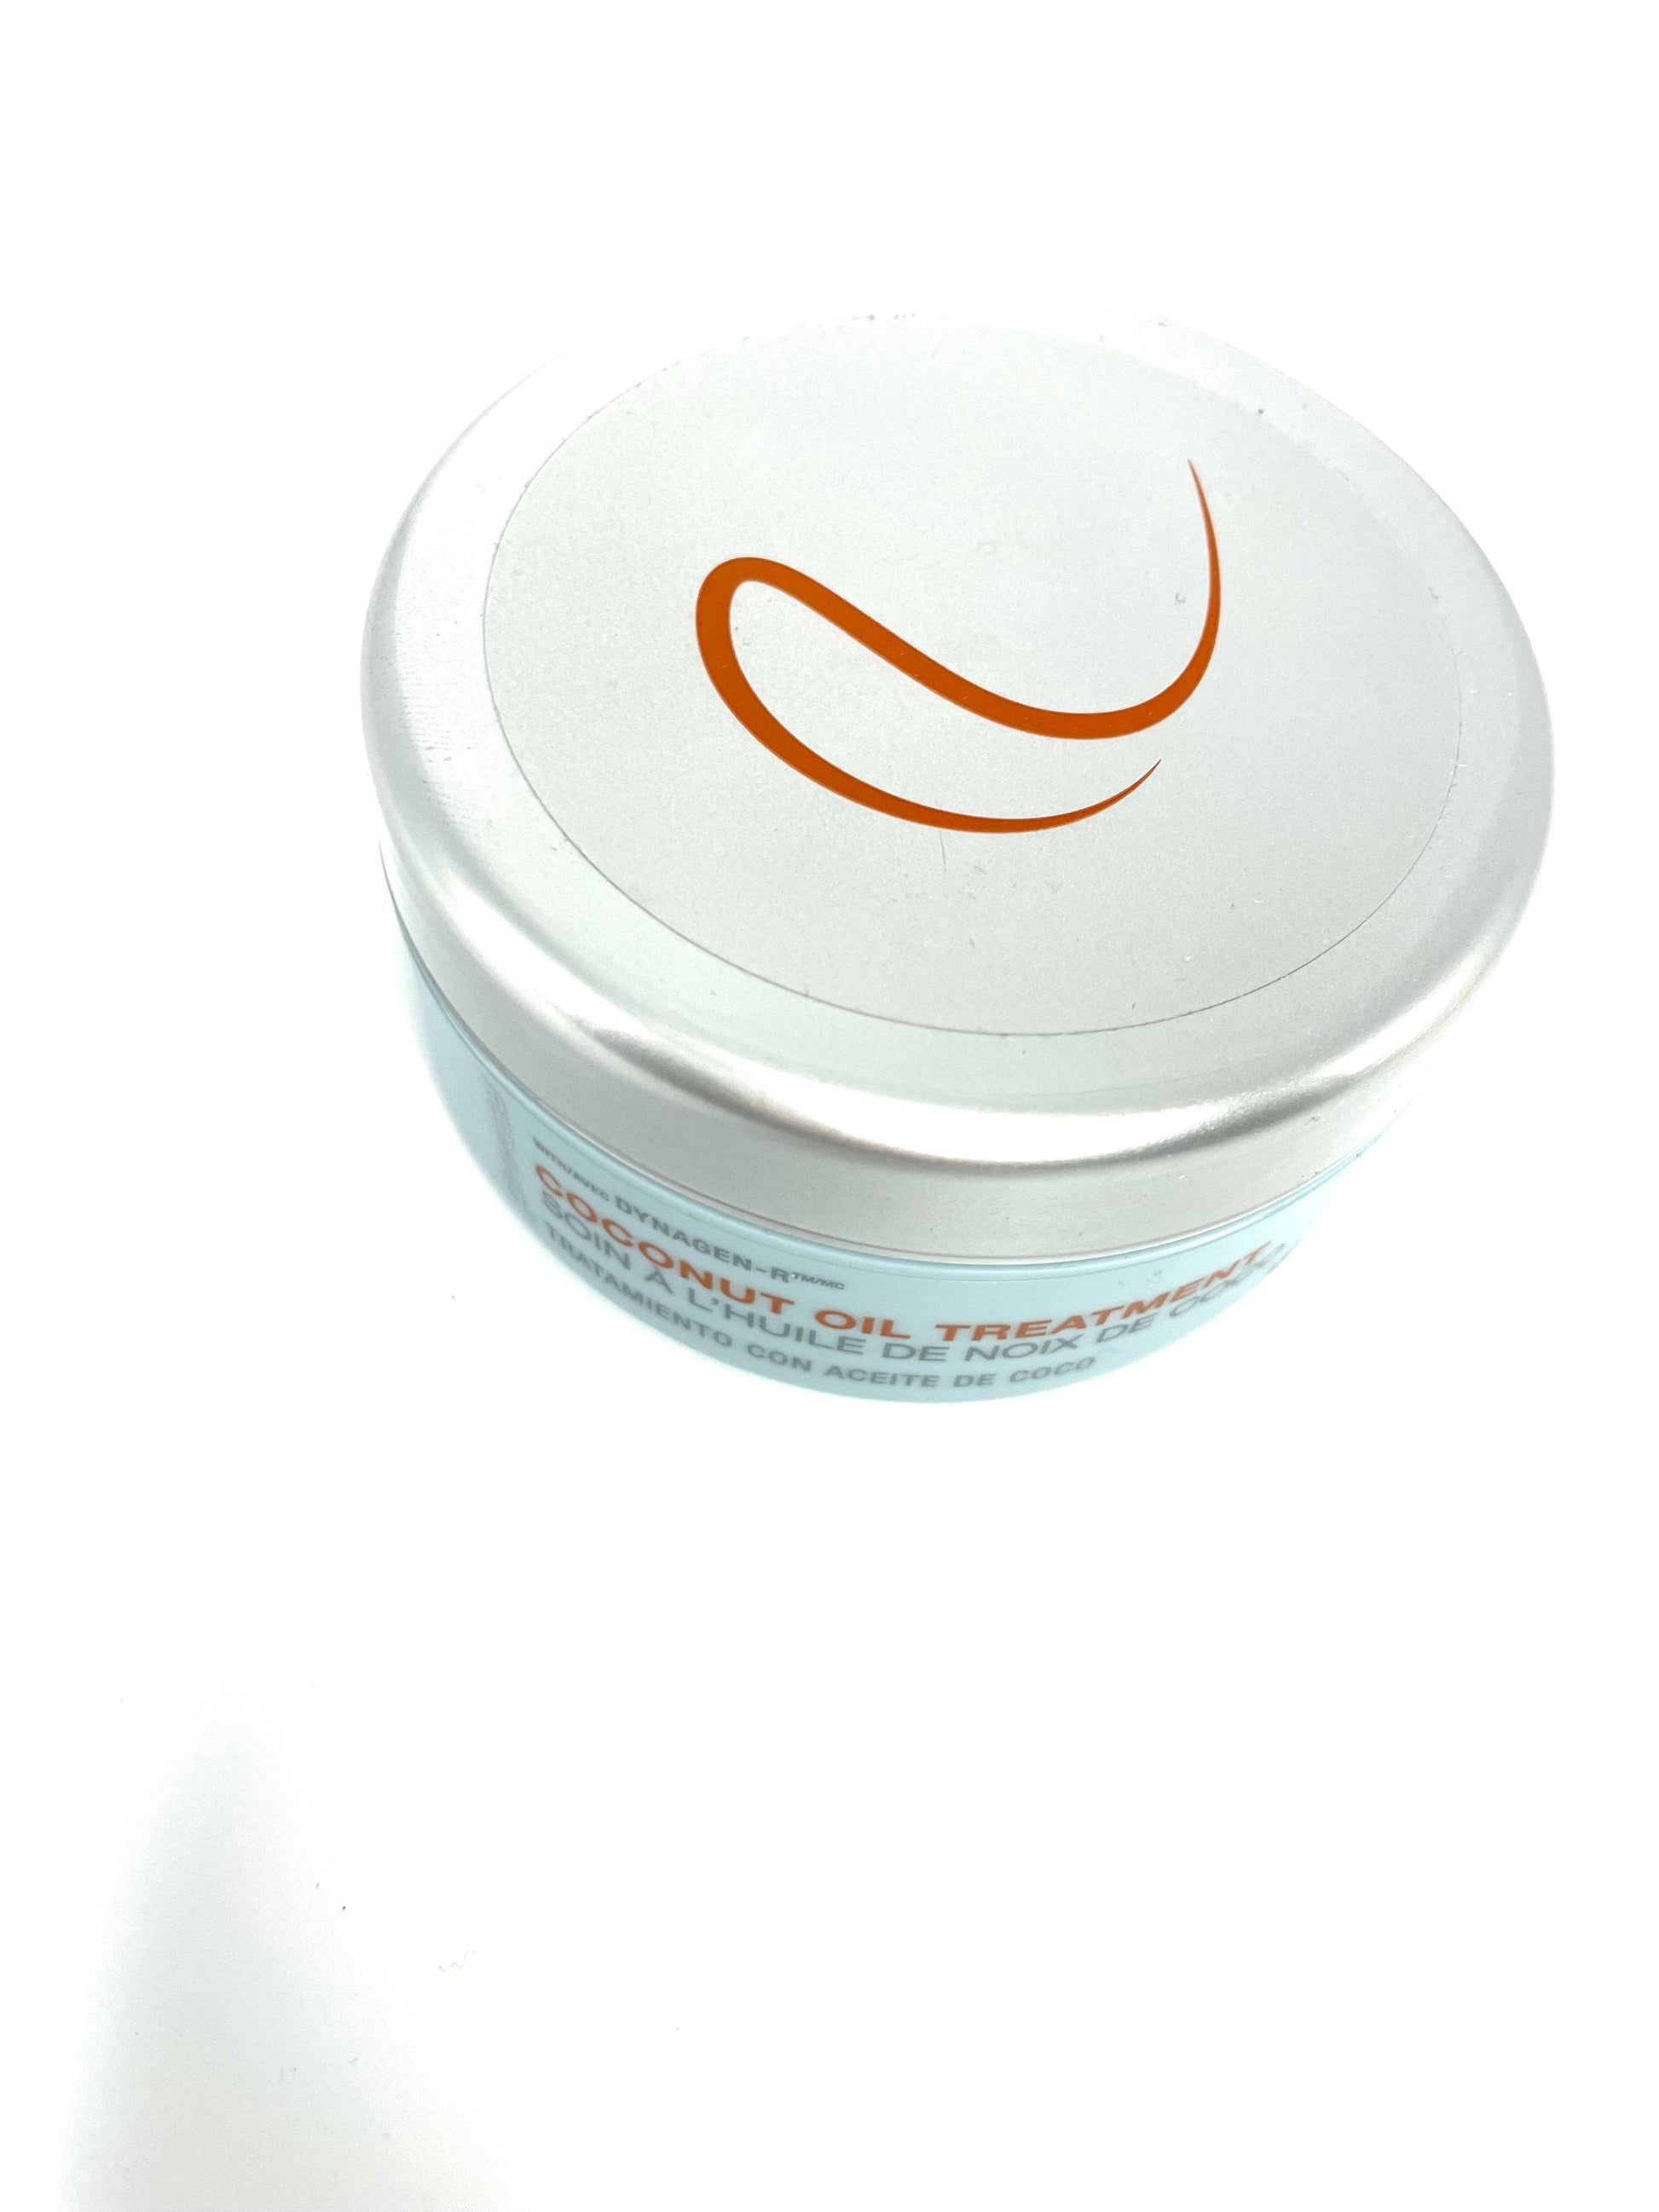 Coconut Oil Redavid Hair Treatment Cream 4.3 oz Hair Mask